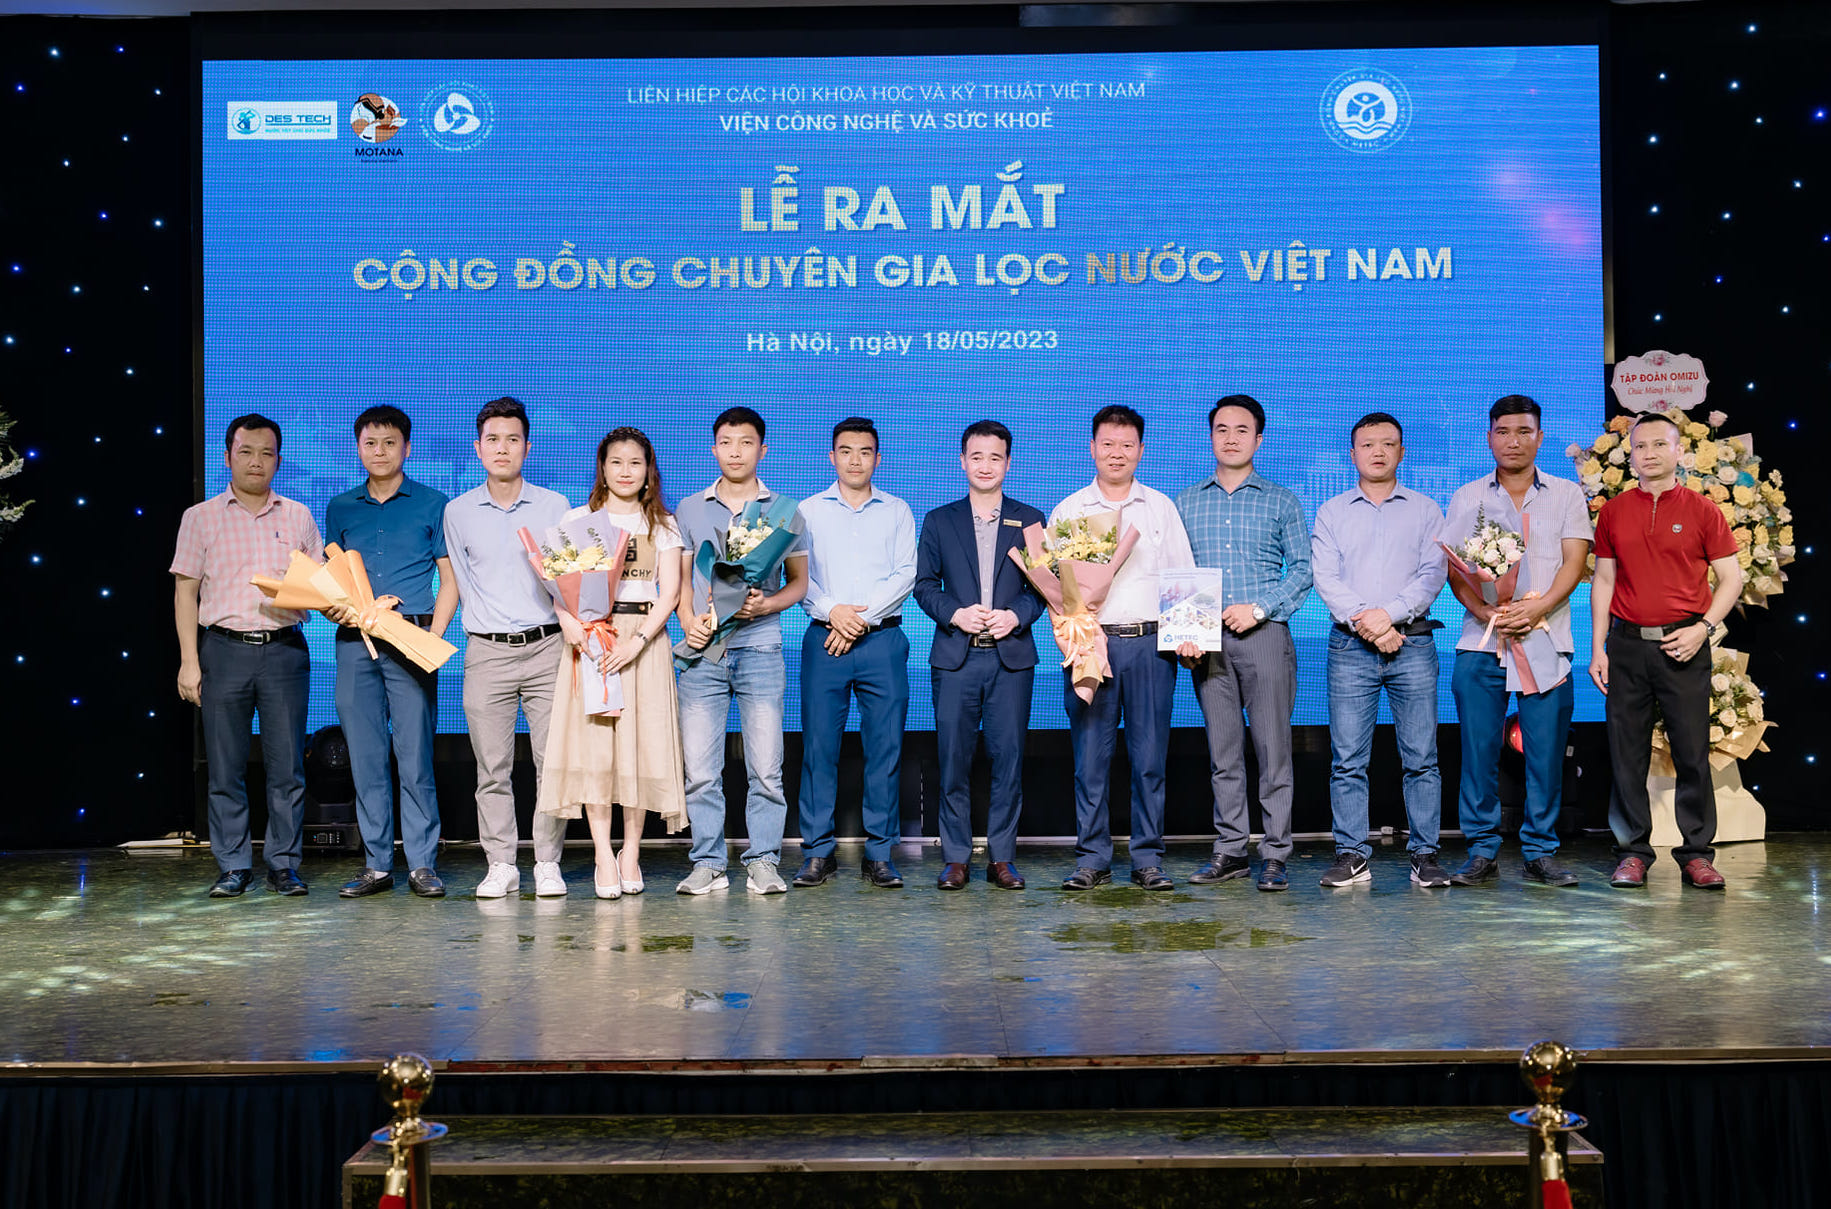 Cộng đồng Chuyên gia Lọc nước Việt Nam ra mắt trong Kỷ niệm 60 năm ngày Khoa học và Công nghệ Việt Nam